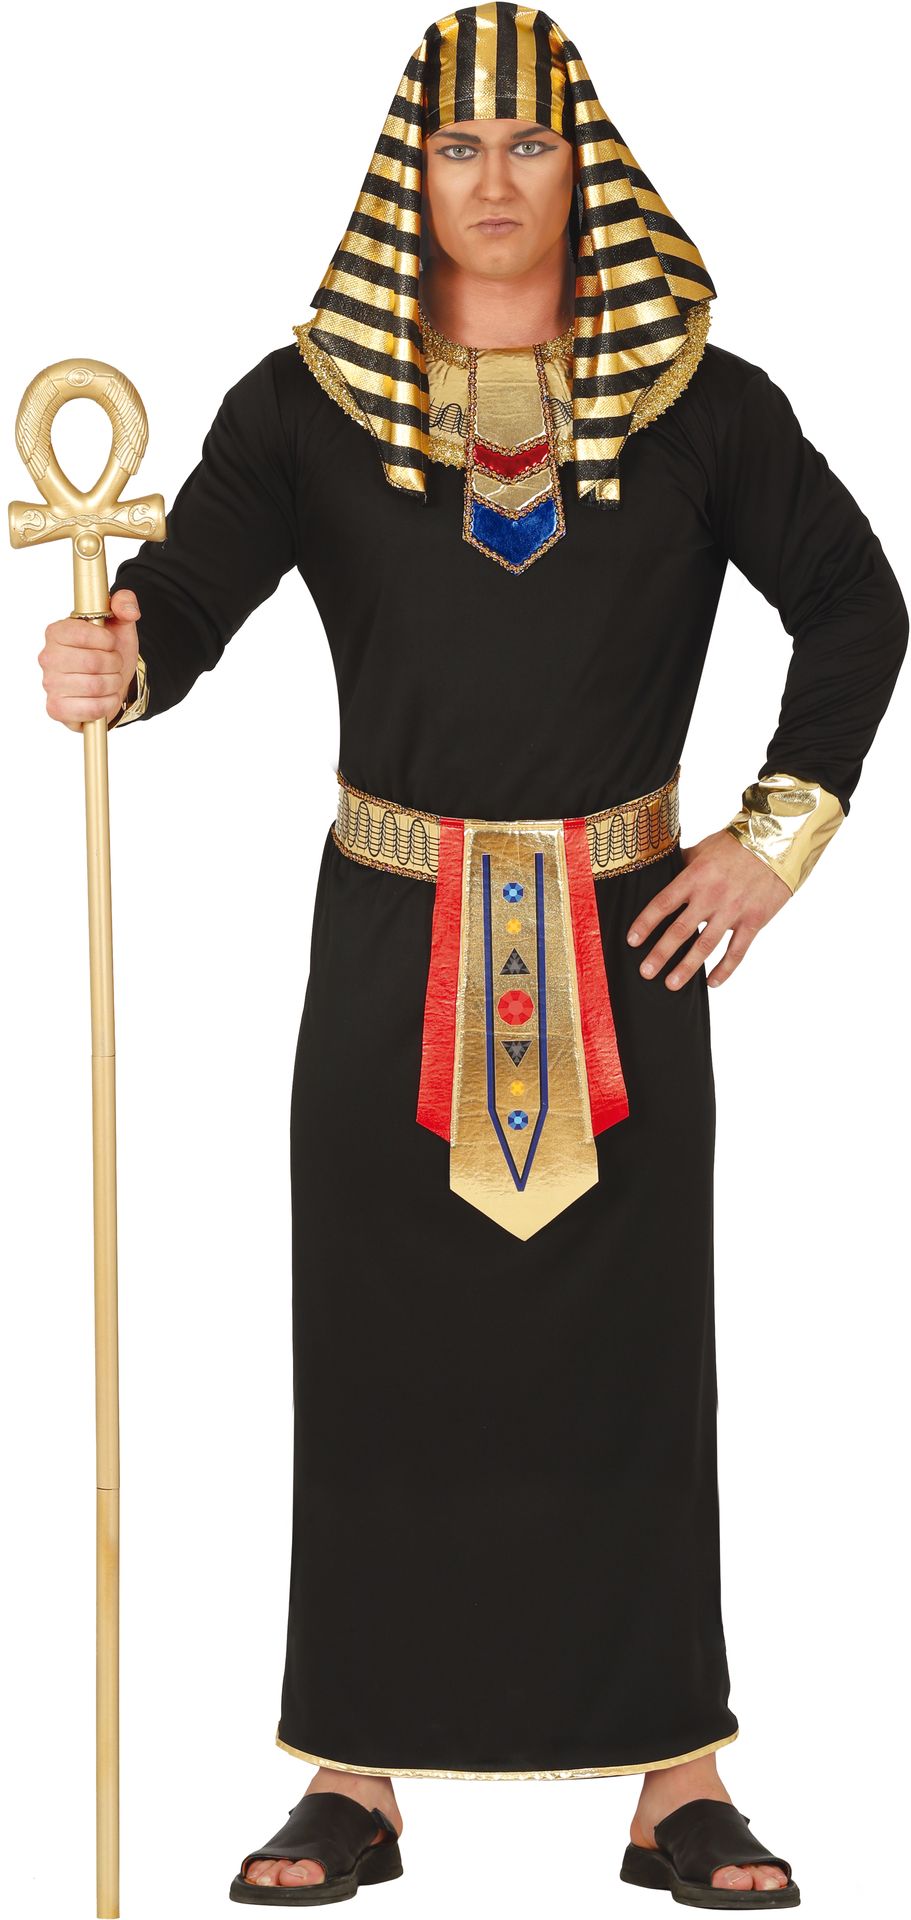 Farao kostuum goud zwart